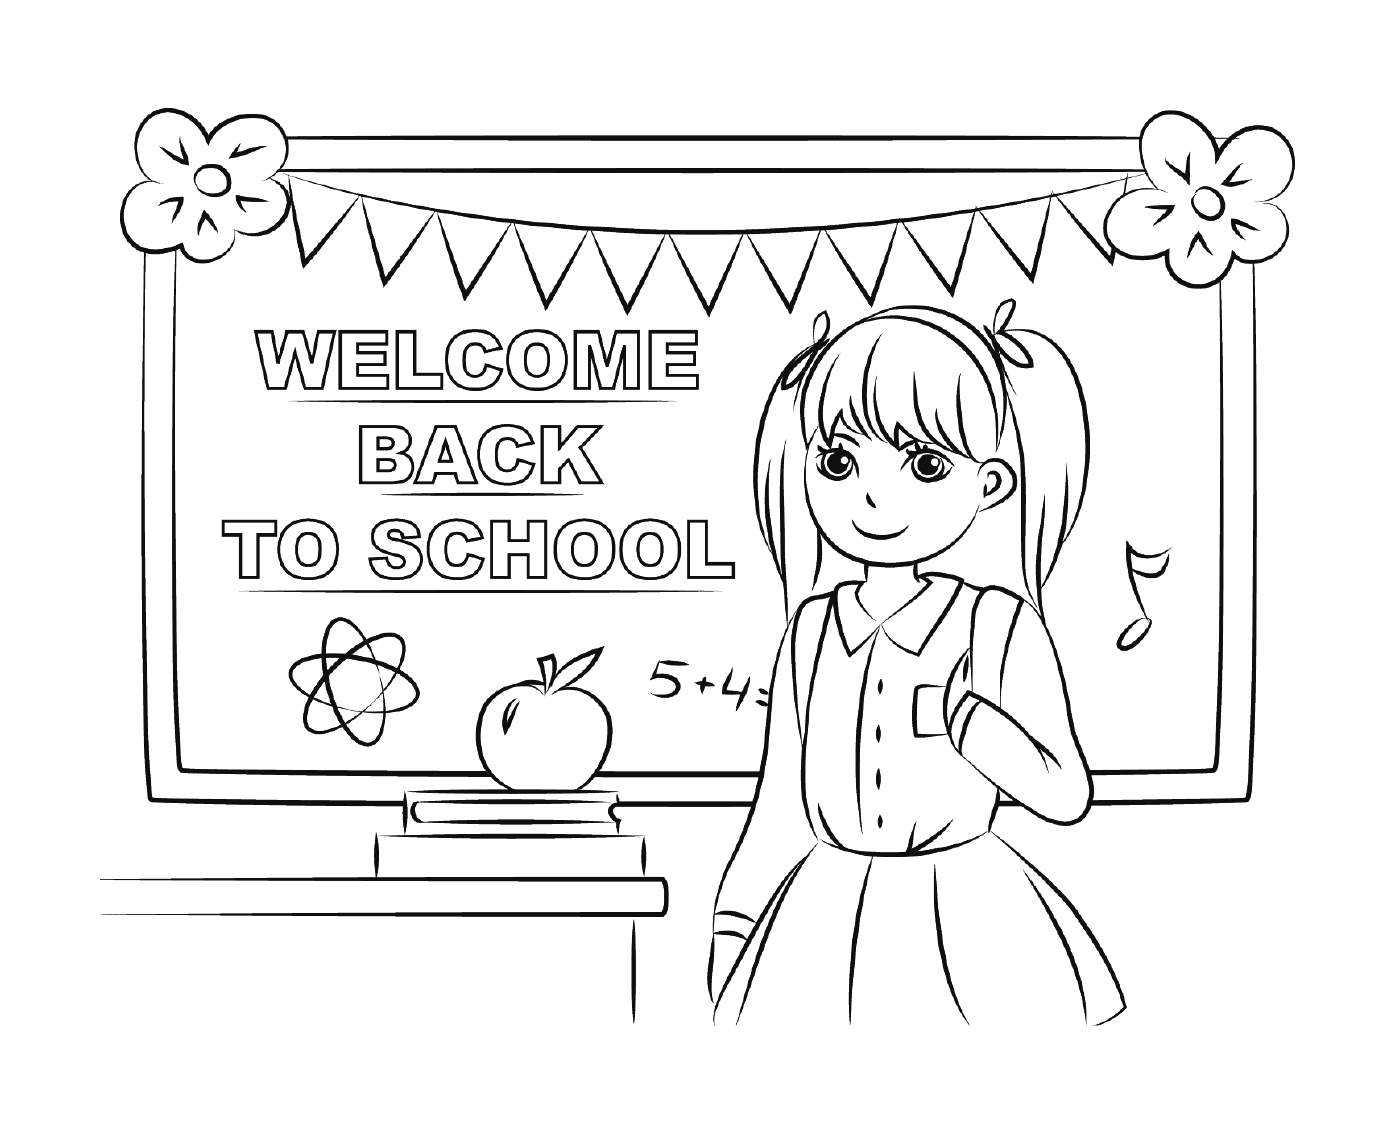  Bem-vindo de volta à escola 